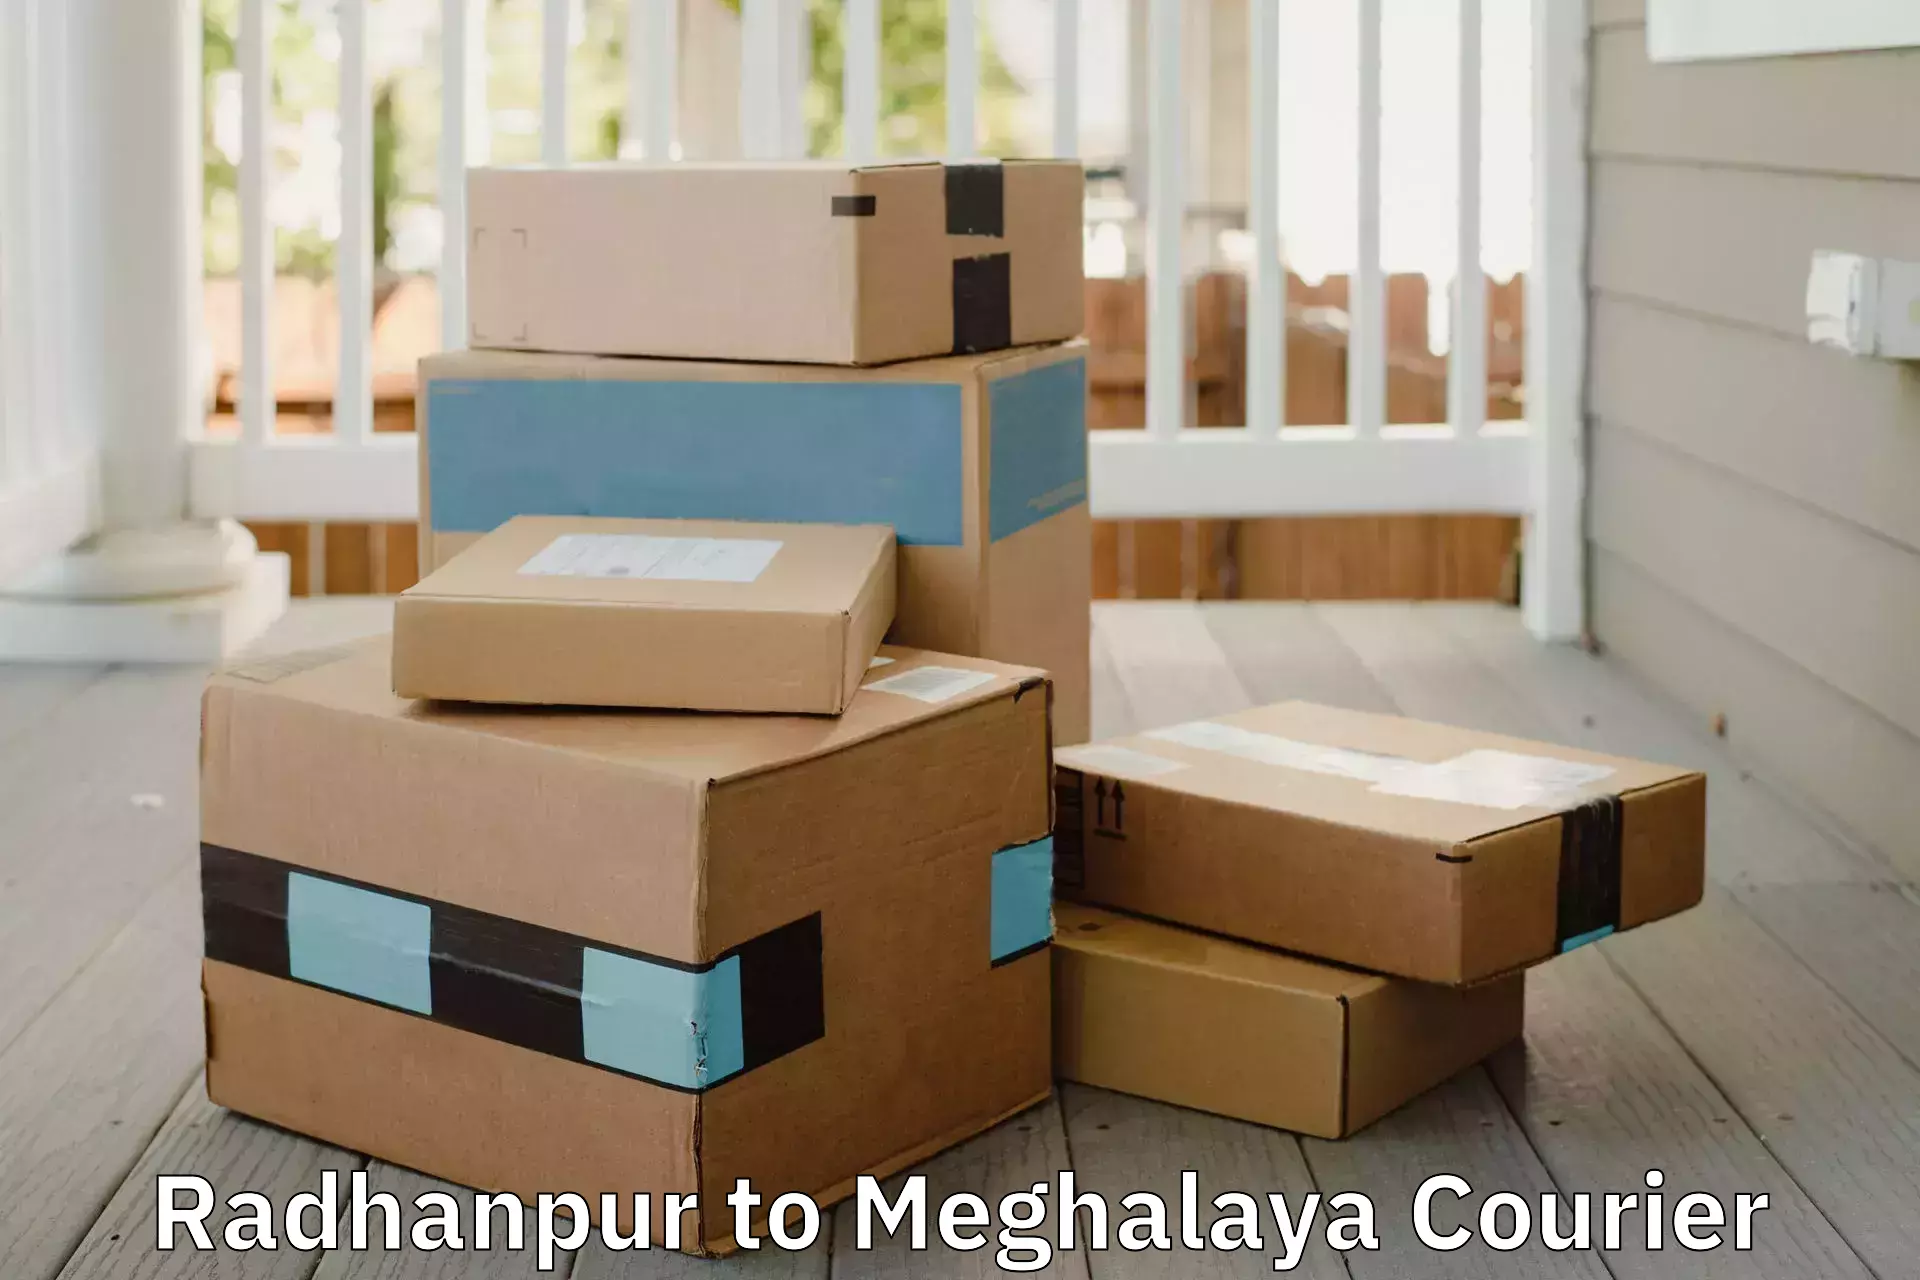 Furniture transport professionals Radhanpur to Meghalaya